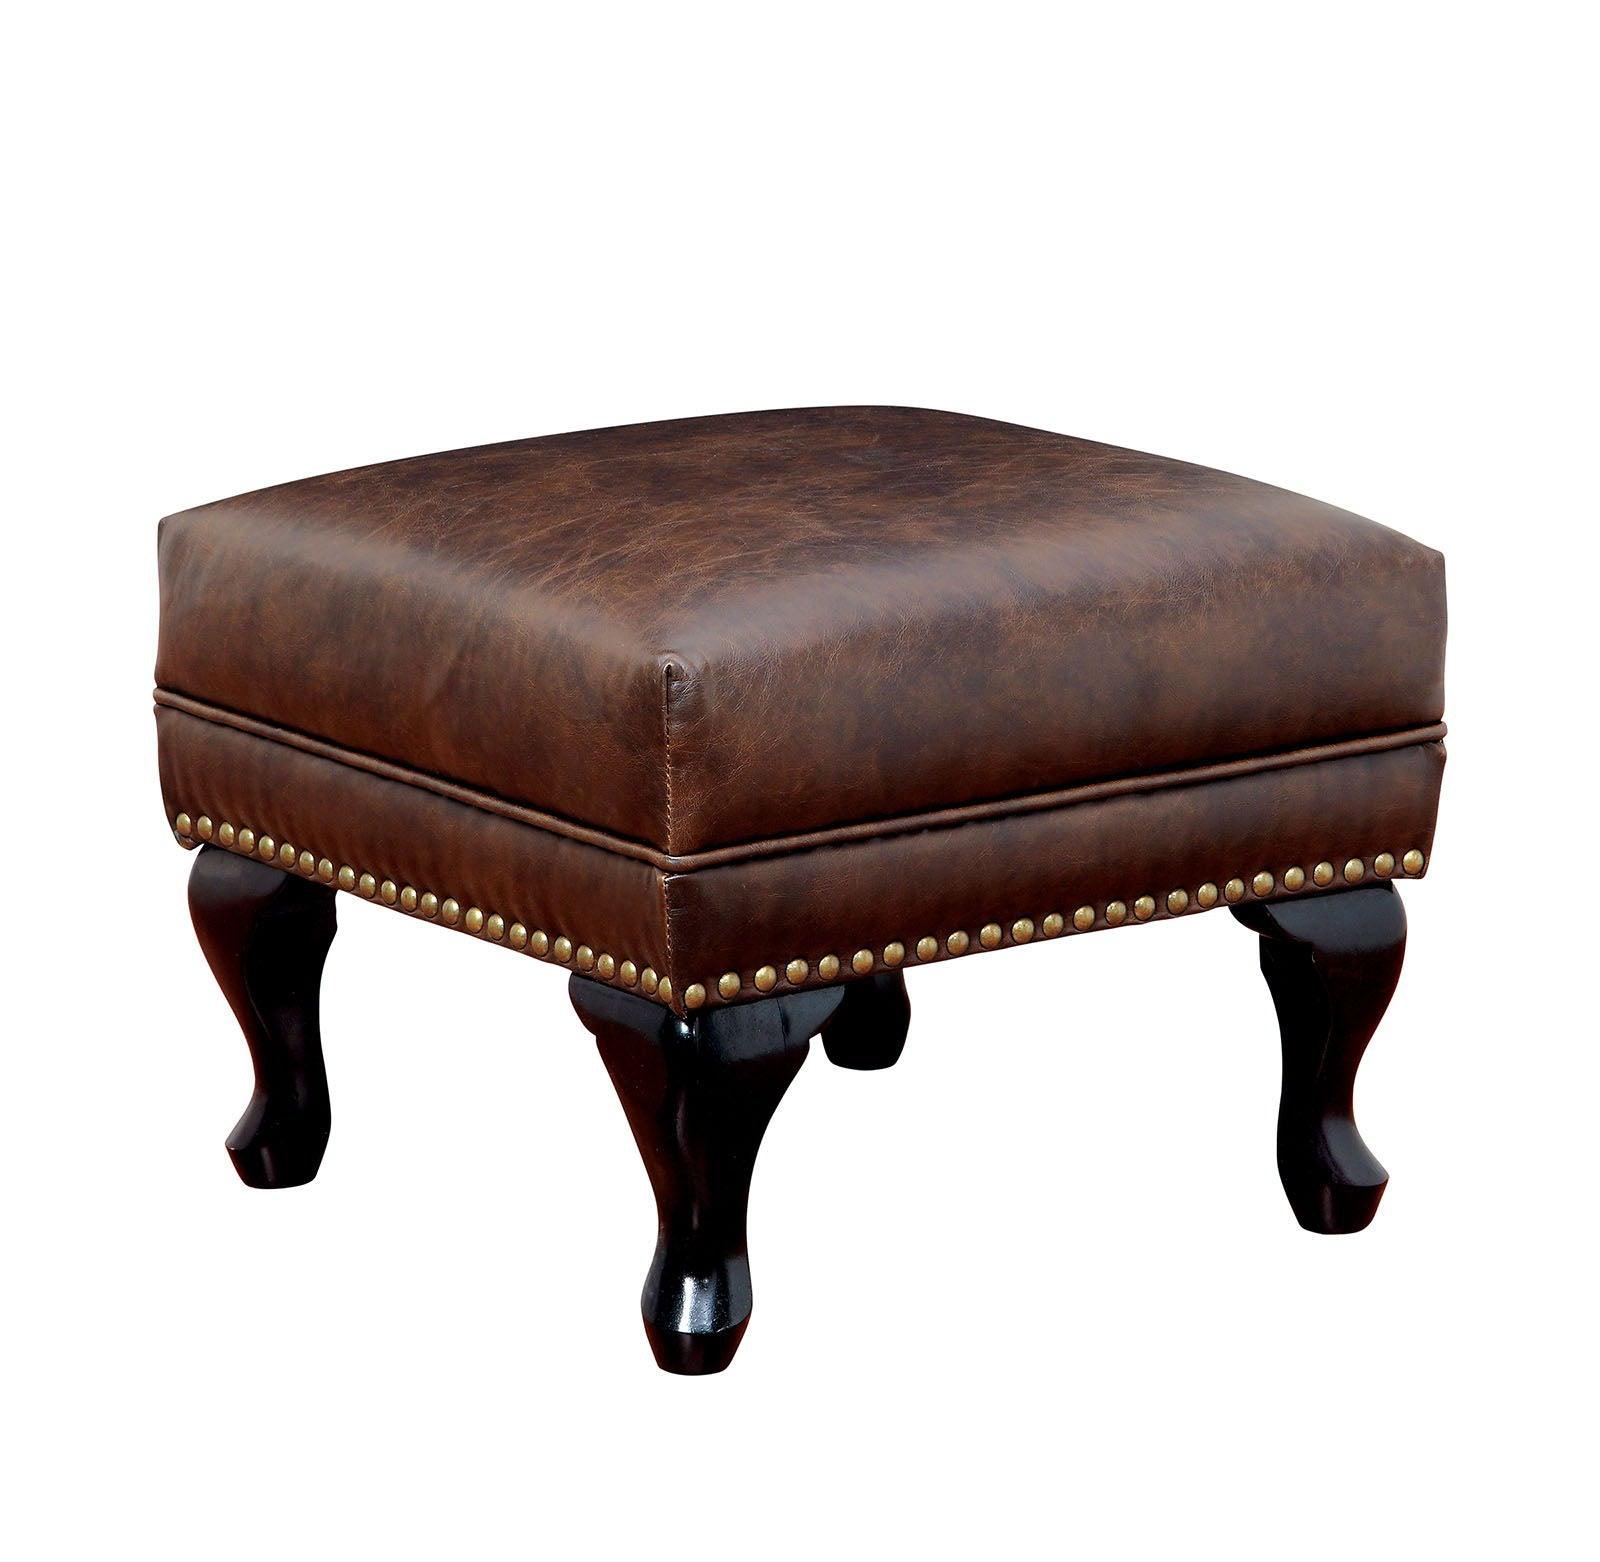 Furniture of America - Vaugh - Ottoman - Rustic Brown - 5th Avenue Furniture